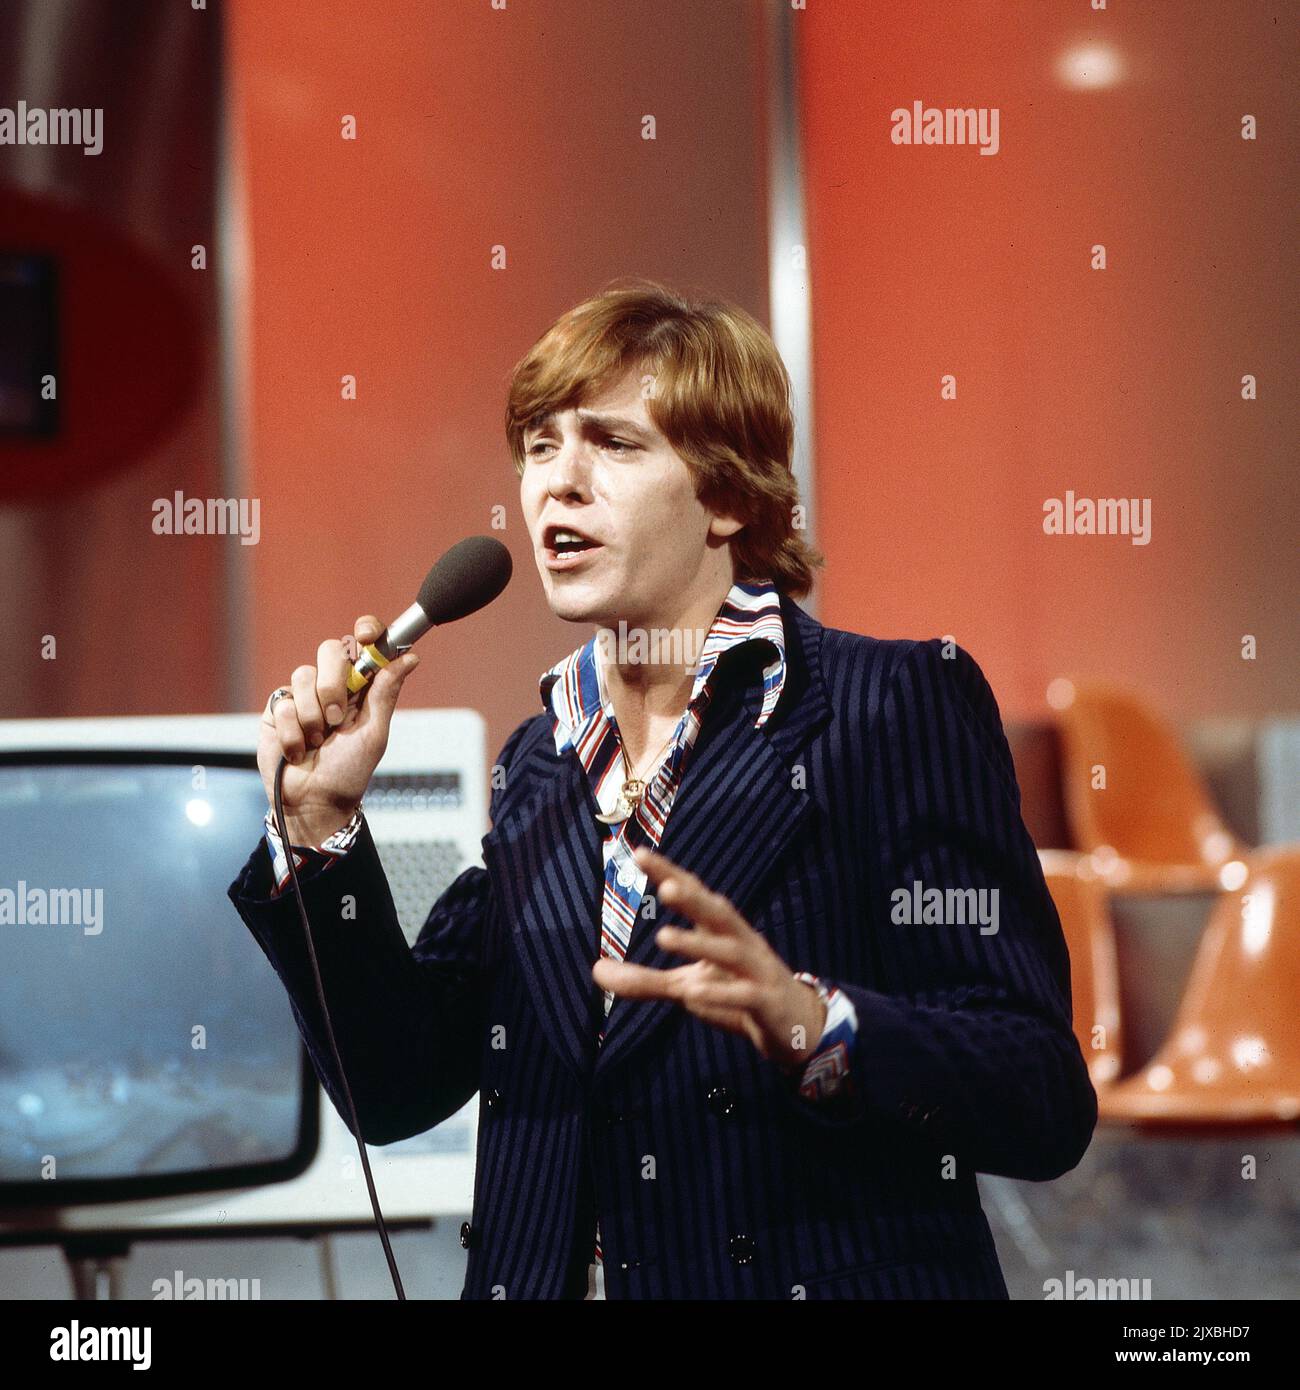 Jürgen Marcus, deutscher Schlagersänger, bei einem Auftritt in Deutschland, 1975. Foto Stock